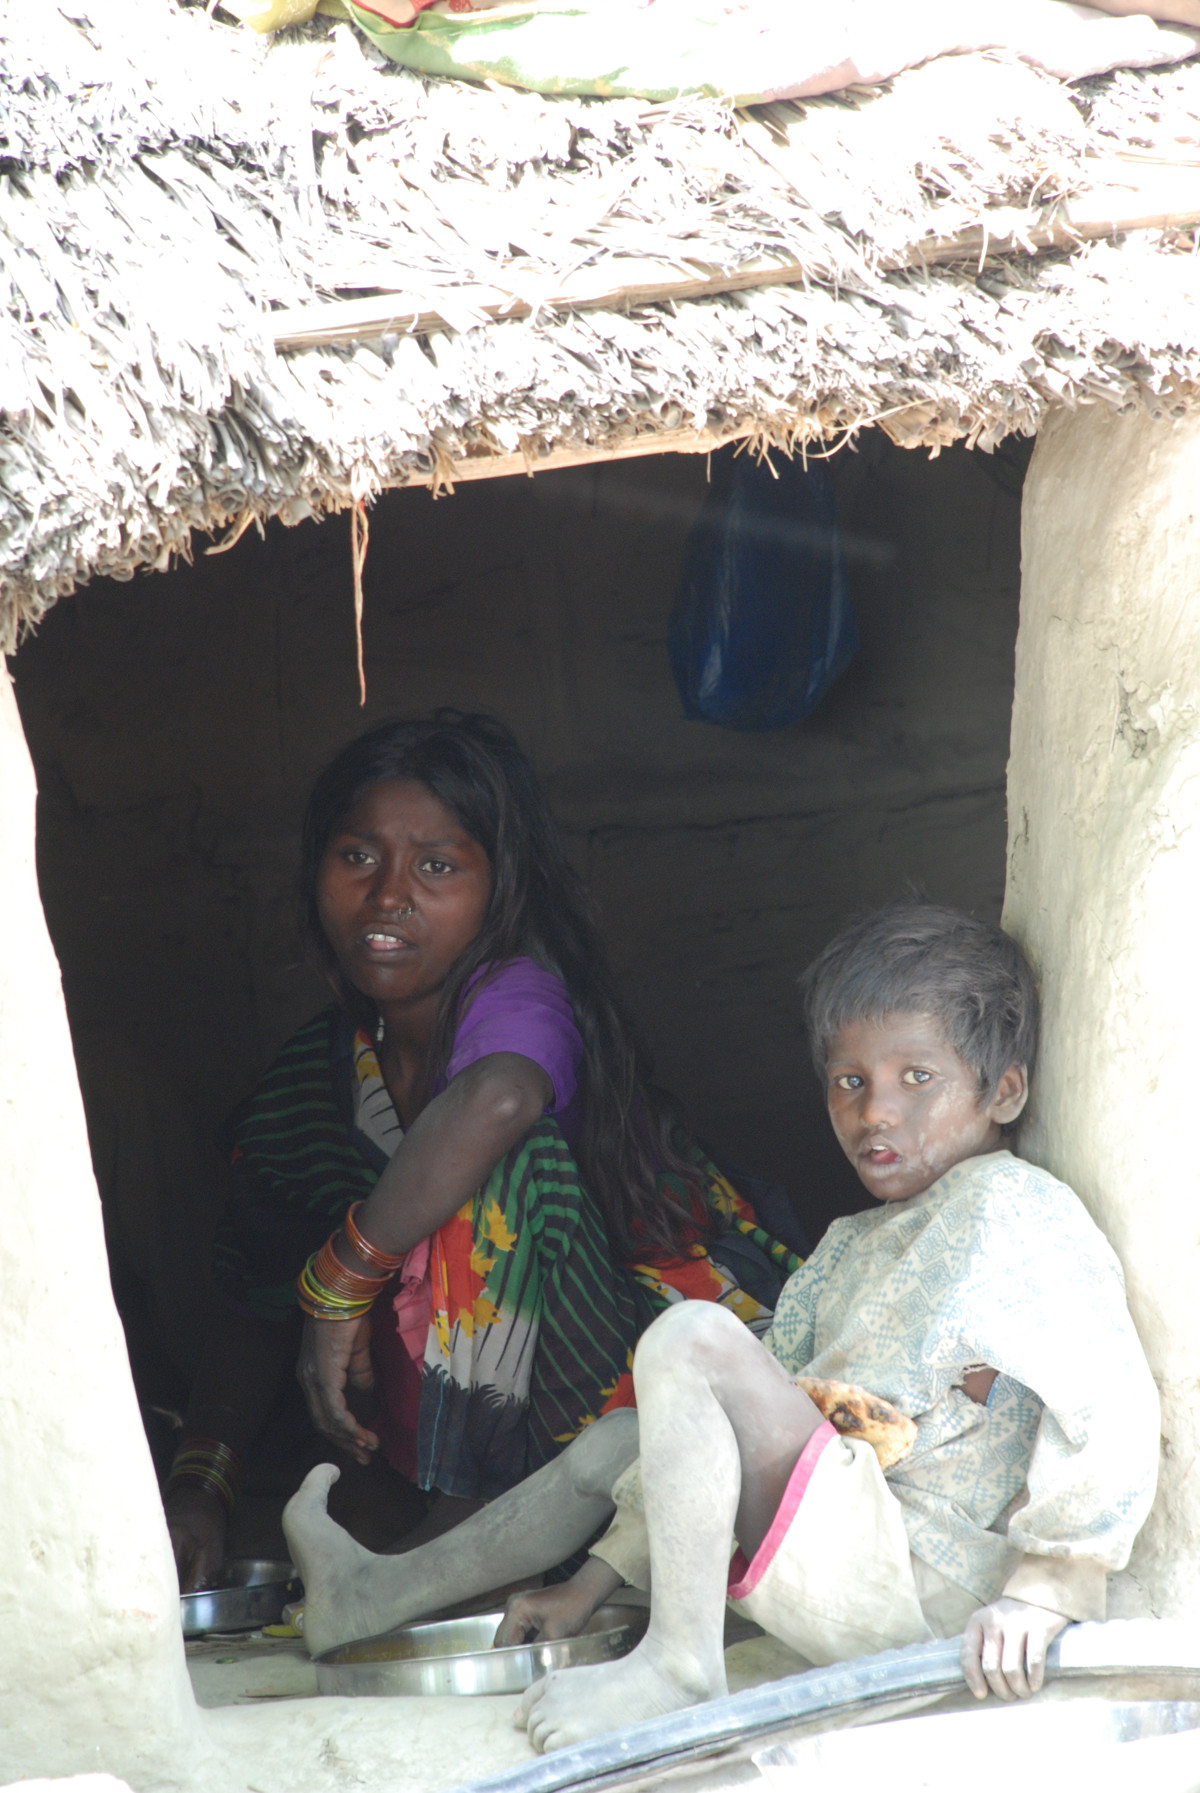 INDIA: Severe hunger in eastern Uttar Pradesh State